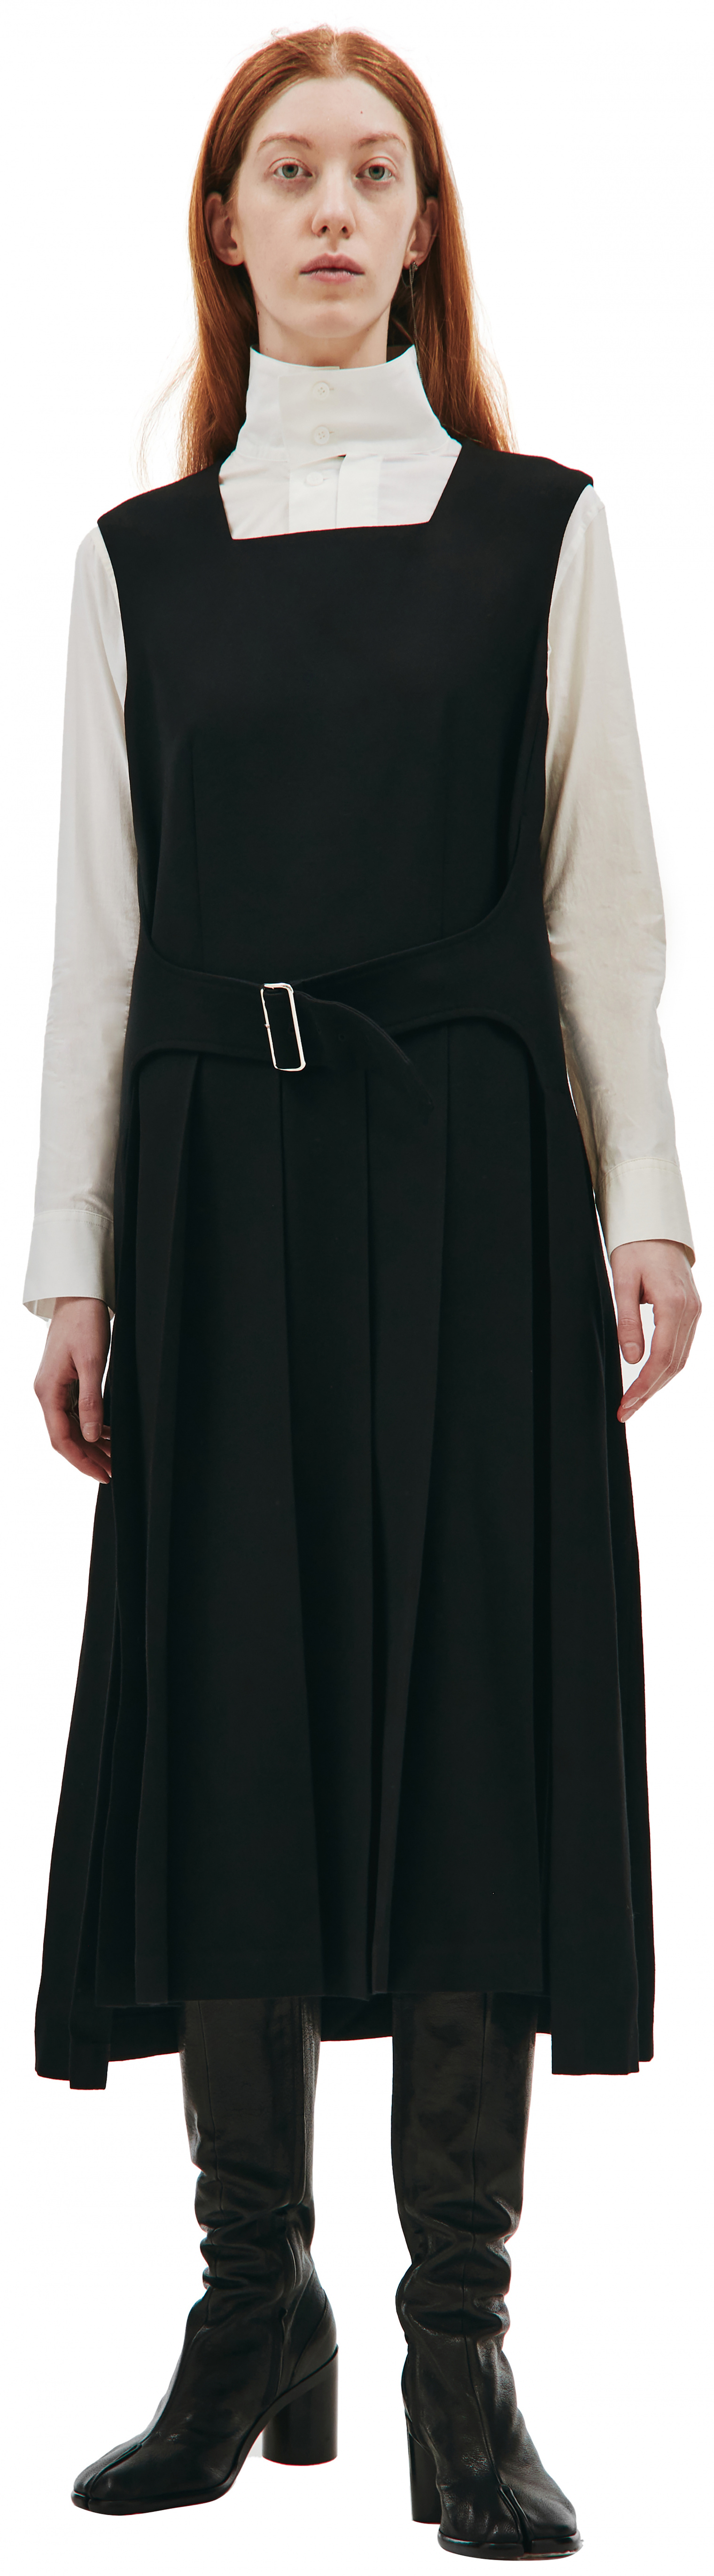 Comme des Garcons CdG Black Wool Dress with belt